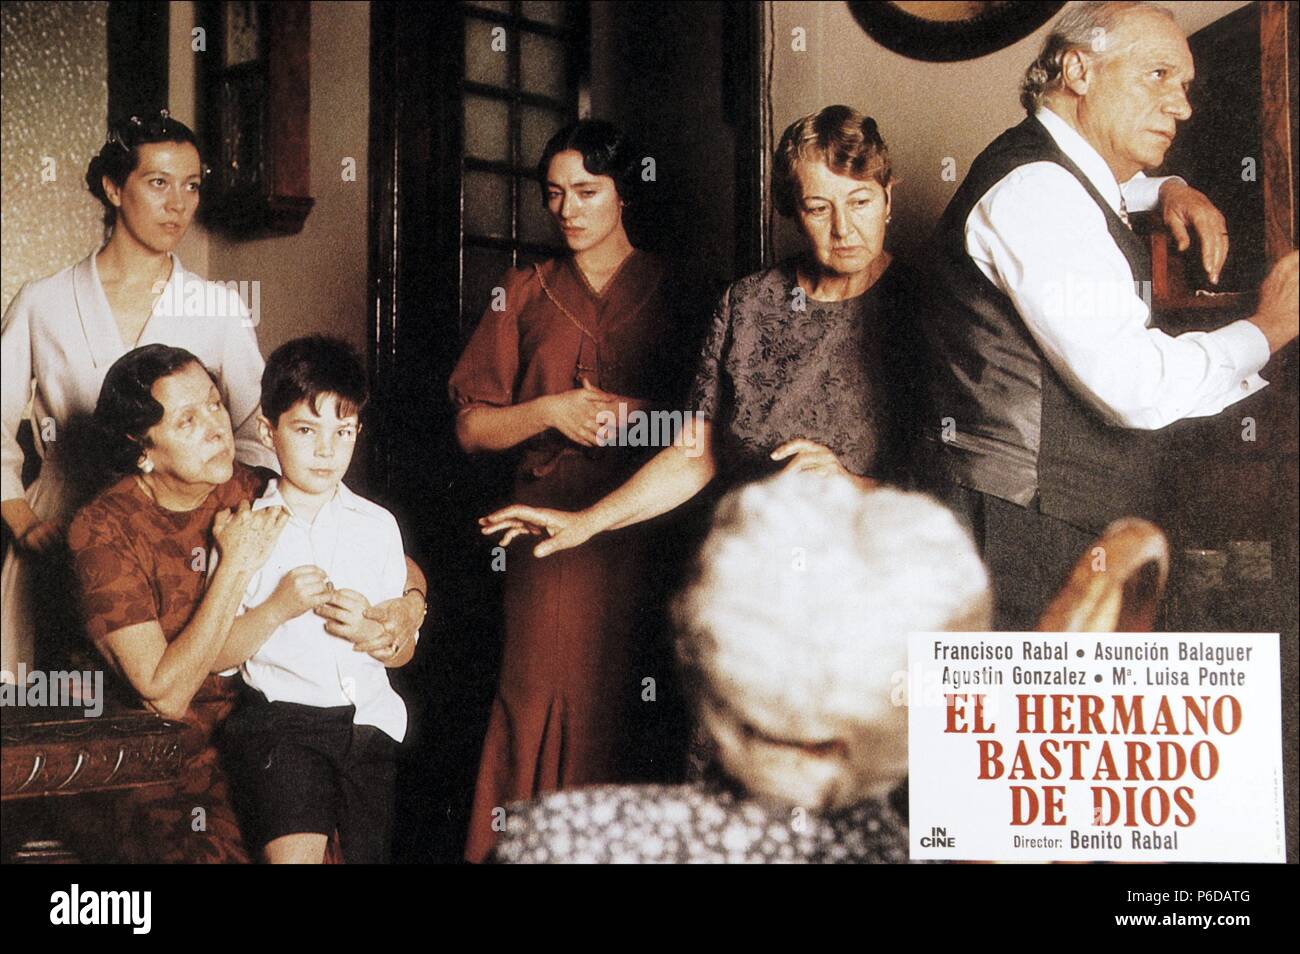 PELICULA :EL HERMANO BASTARDO DE DIOS , 1986. DIRECTOR , BENITO RABAL. ACTORES , FRANCISCO RABAL , ASUNCION BALAGUER. Stock Photo